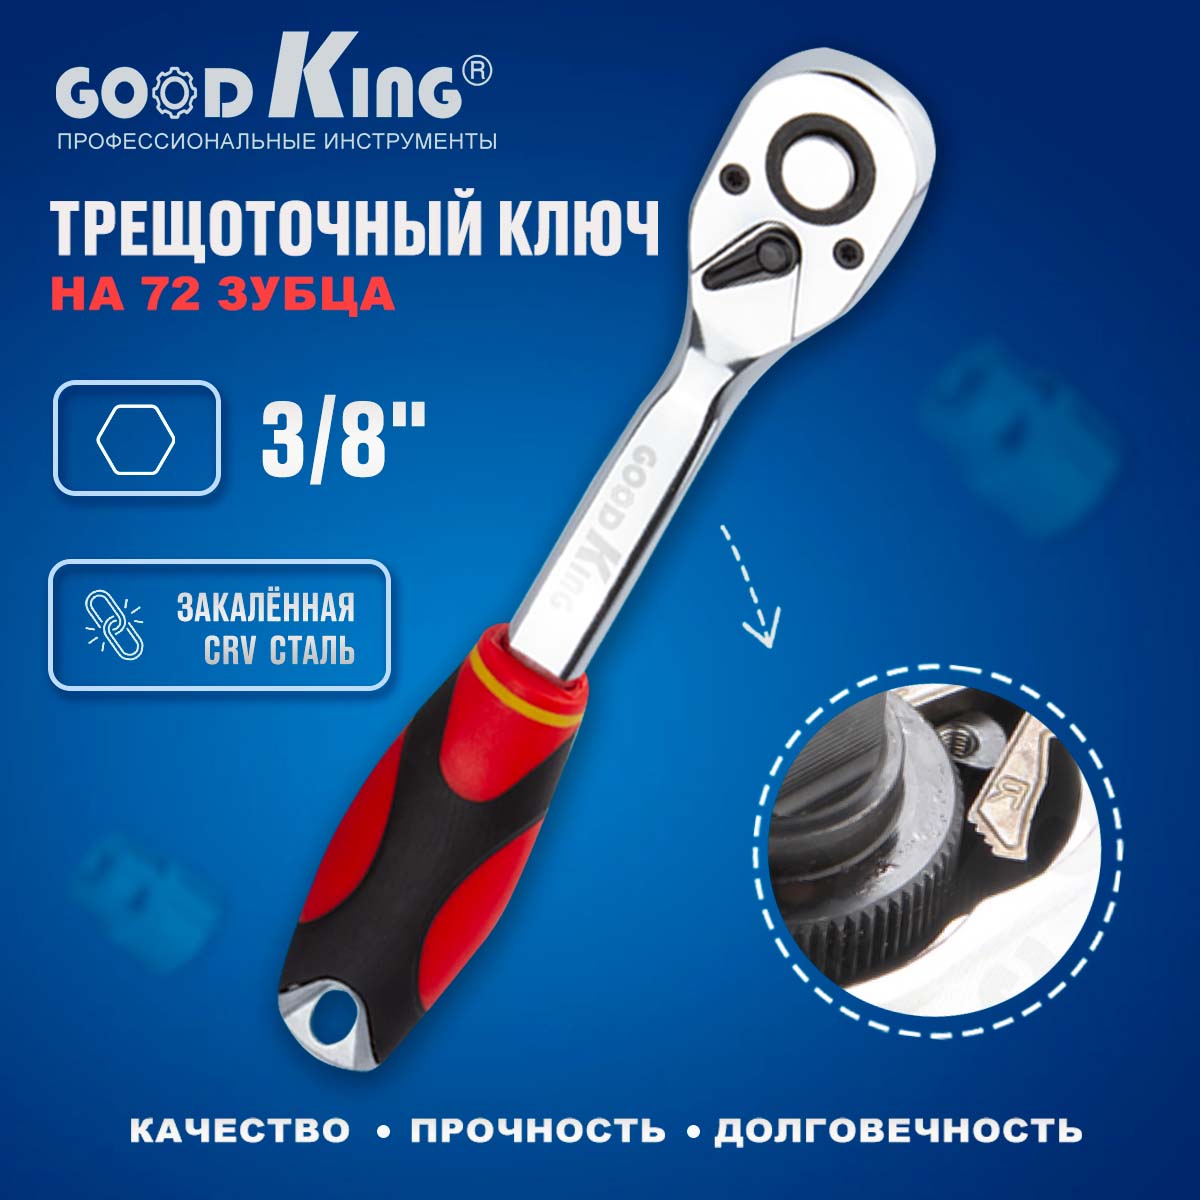 Трещотка 3/8 72 зубца GoodKing T-103872 ключ трещоточный, для ремонта, для авто трещотка goodking 3 8 дюйма t 103872